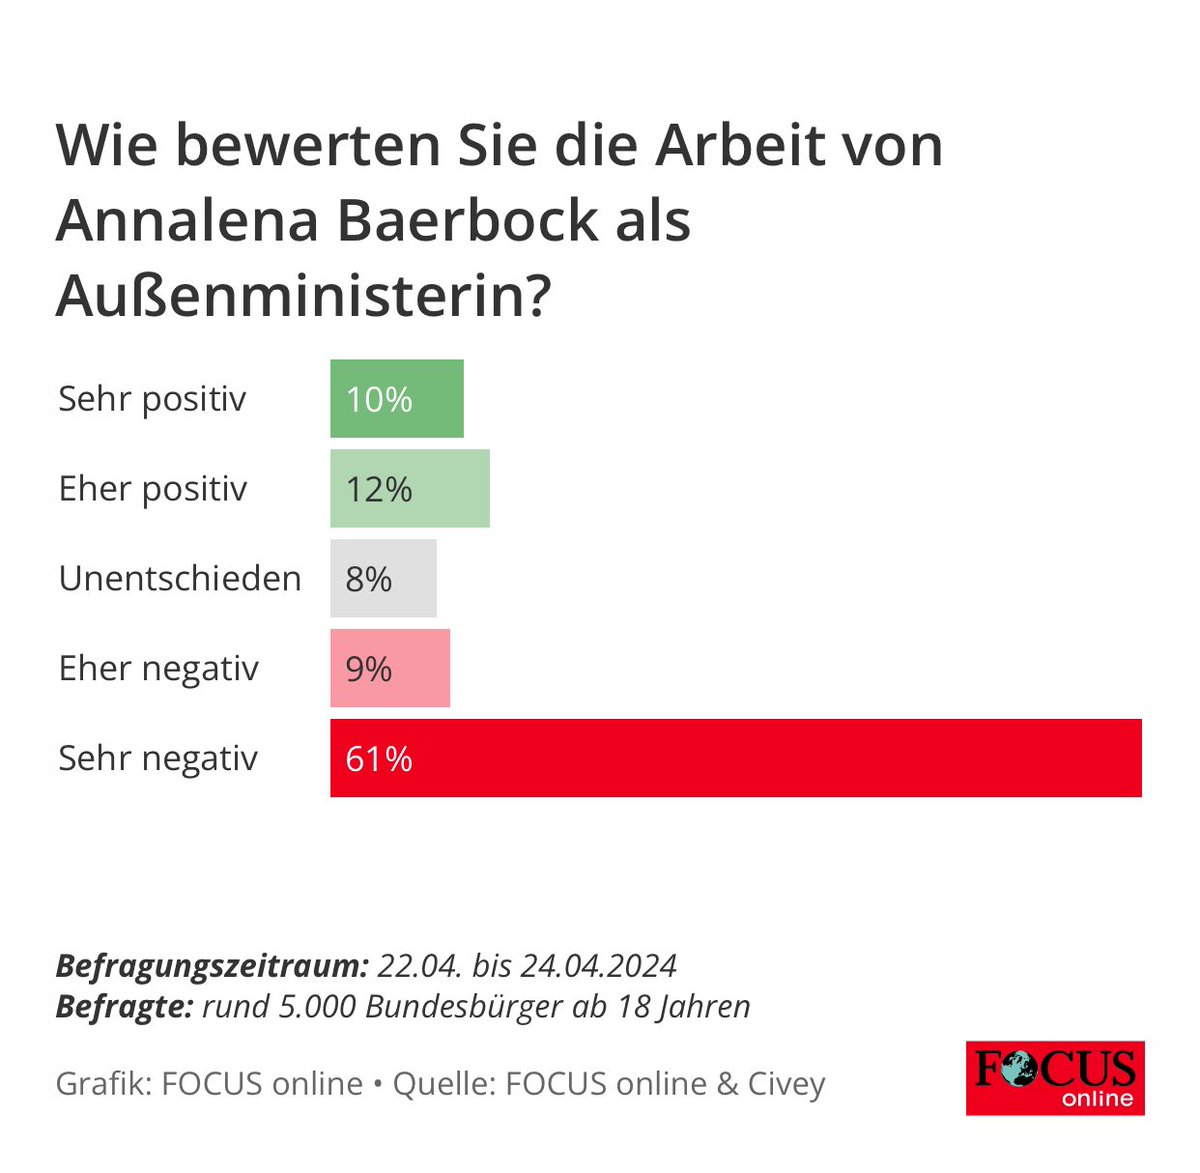 Das Konzept „Feministische Außenpolitik“ darf man als vollständig gescheitert bezeichnen.

#Baerbock, 70% Ablehnung deutlich durchgefallen, tut den Frauen in Deutschland keinen Gefallen wenn sie ihr wirres Gestammel als „Feminismus“ verkauft.

Frauen können viel mehr als diese.